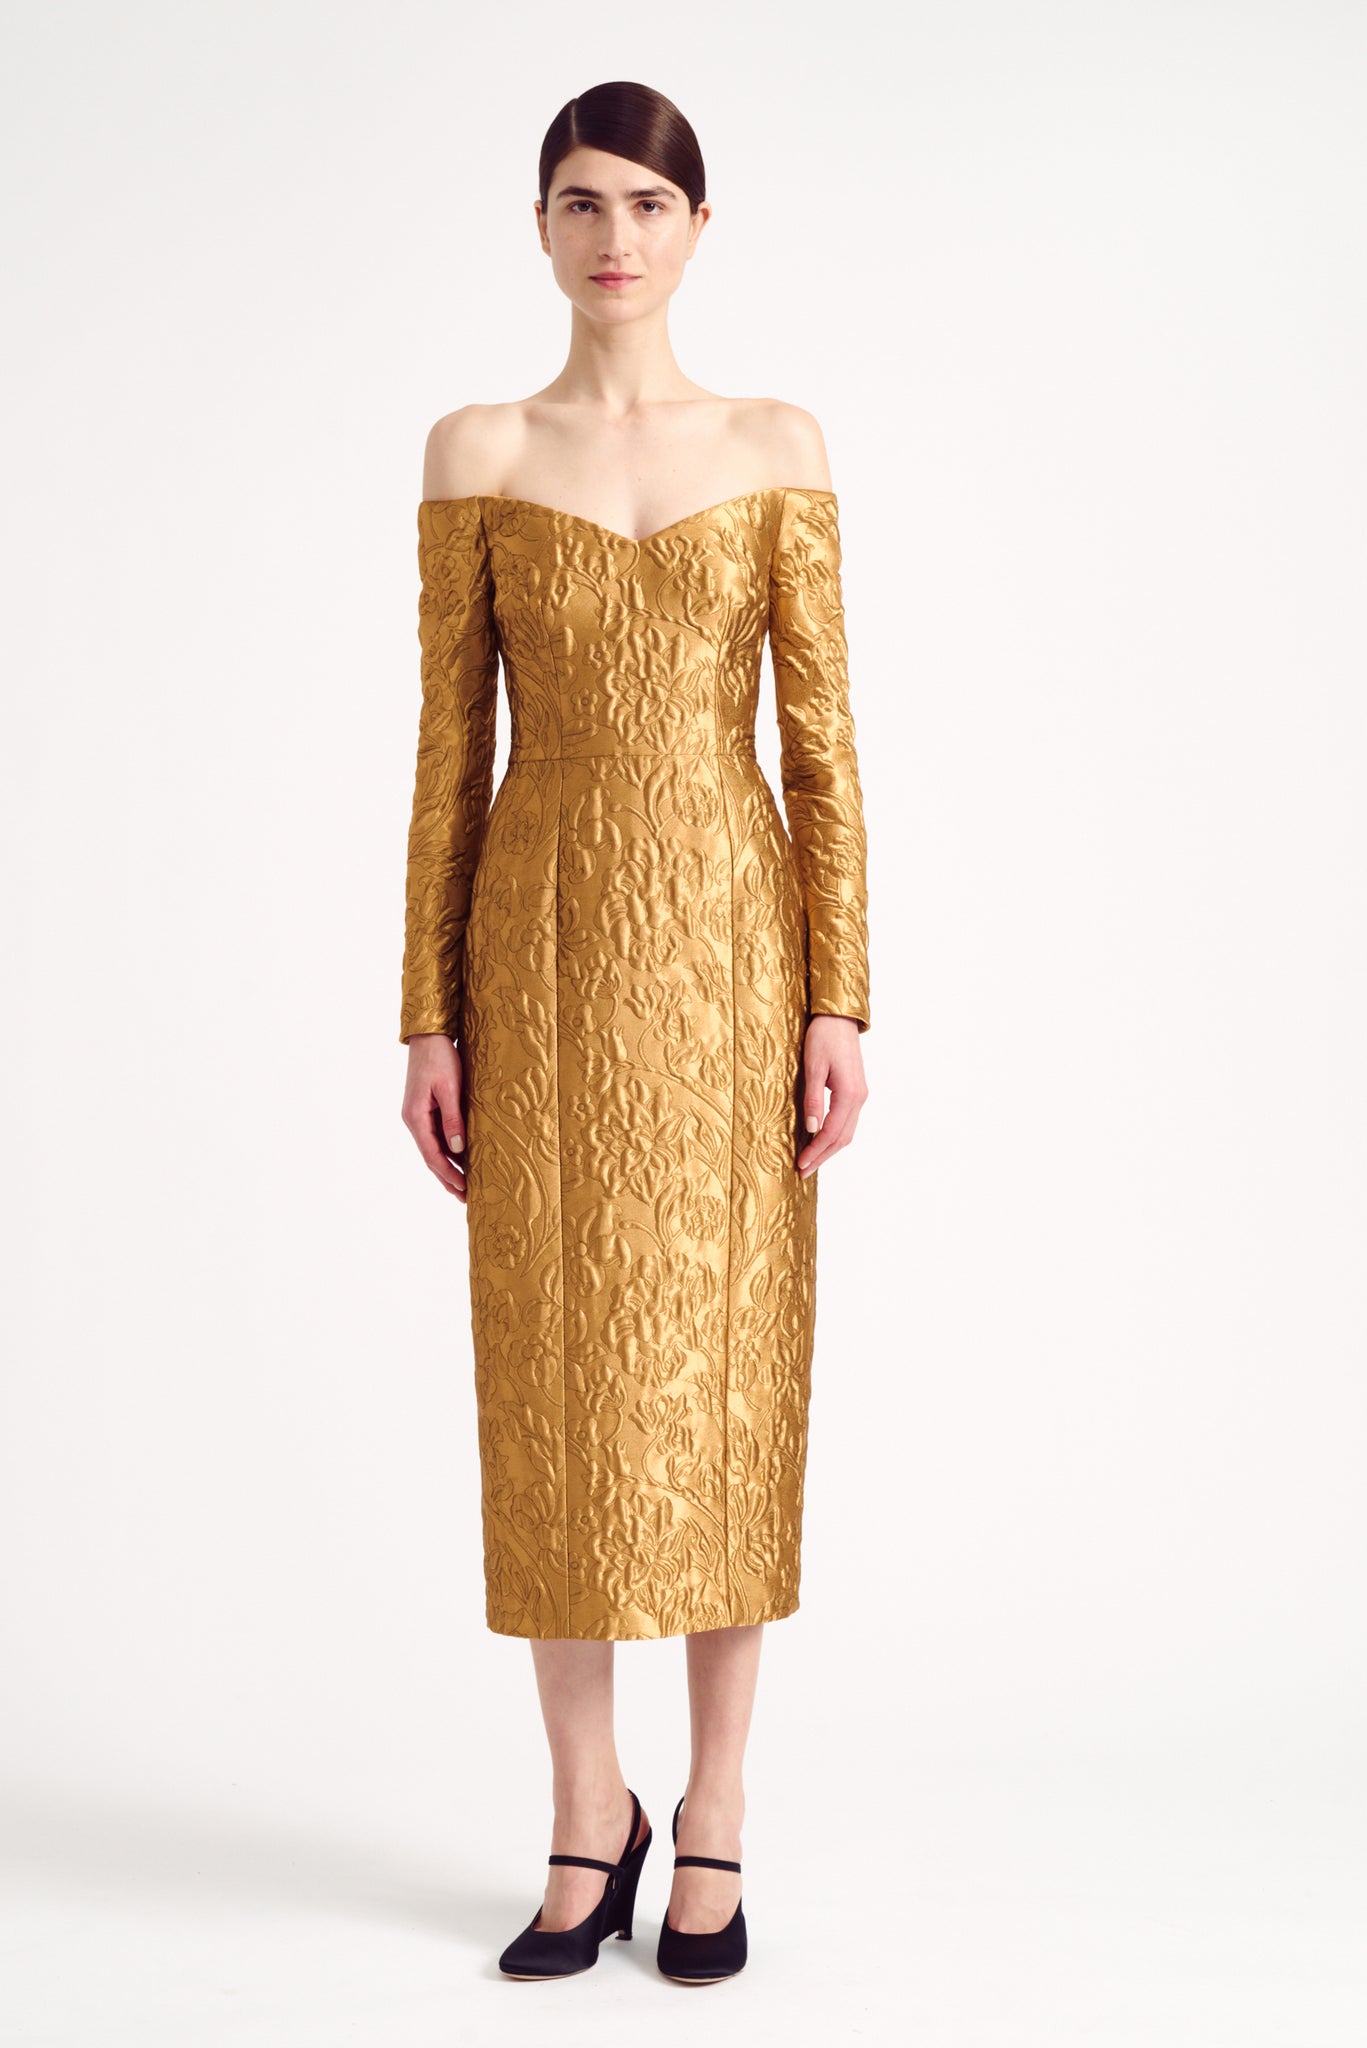 Burleigh Dress in Gold Lurex Metallic Jacquard | Emilia Wickstead